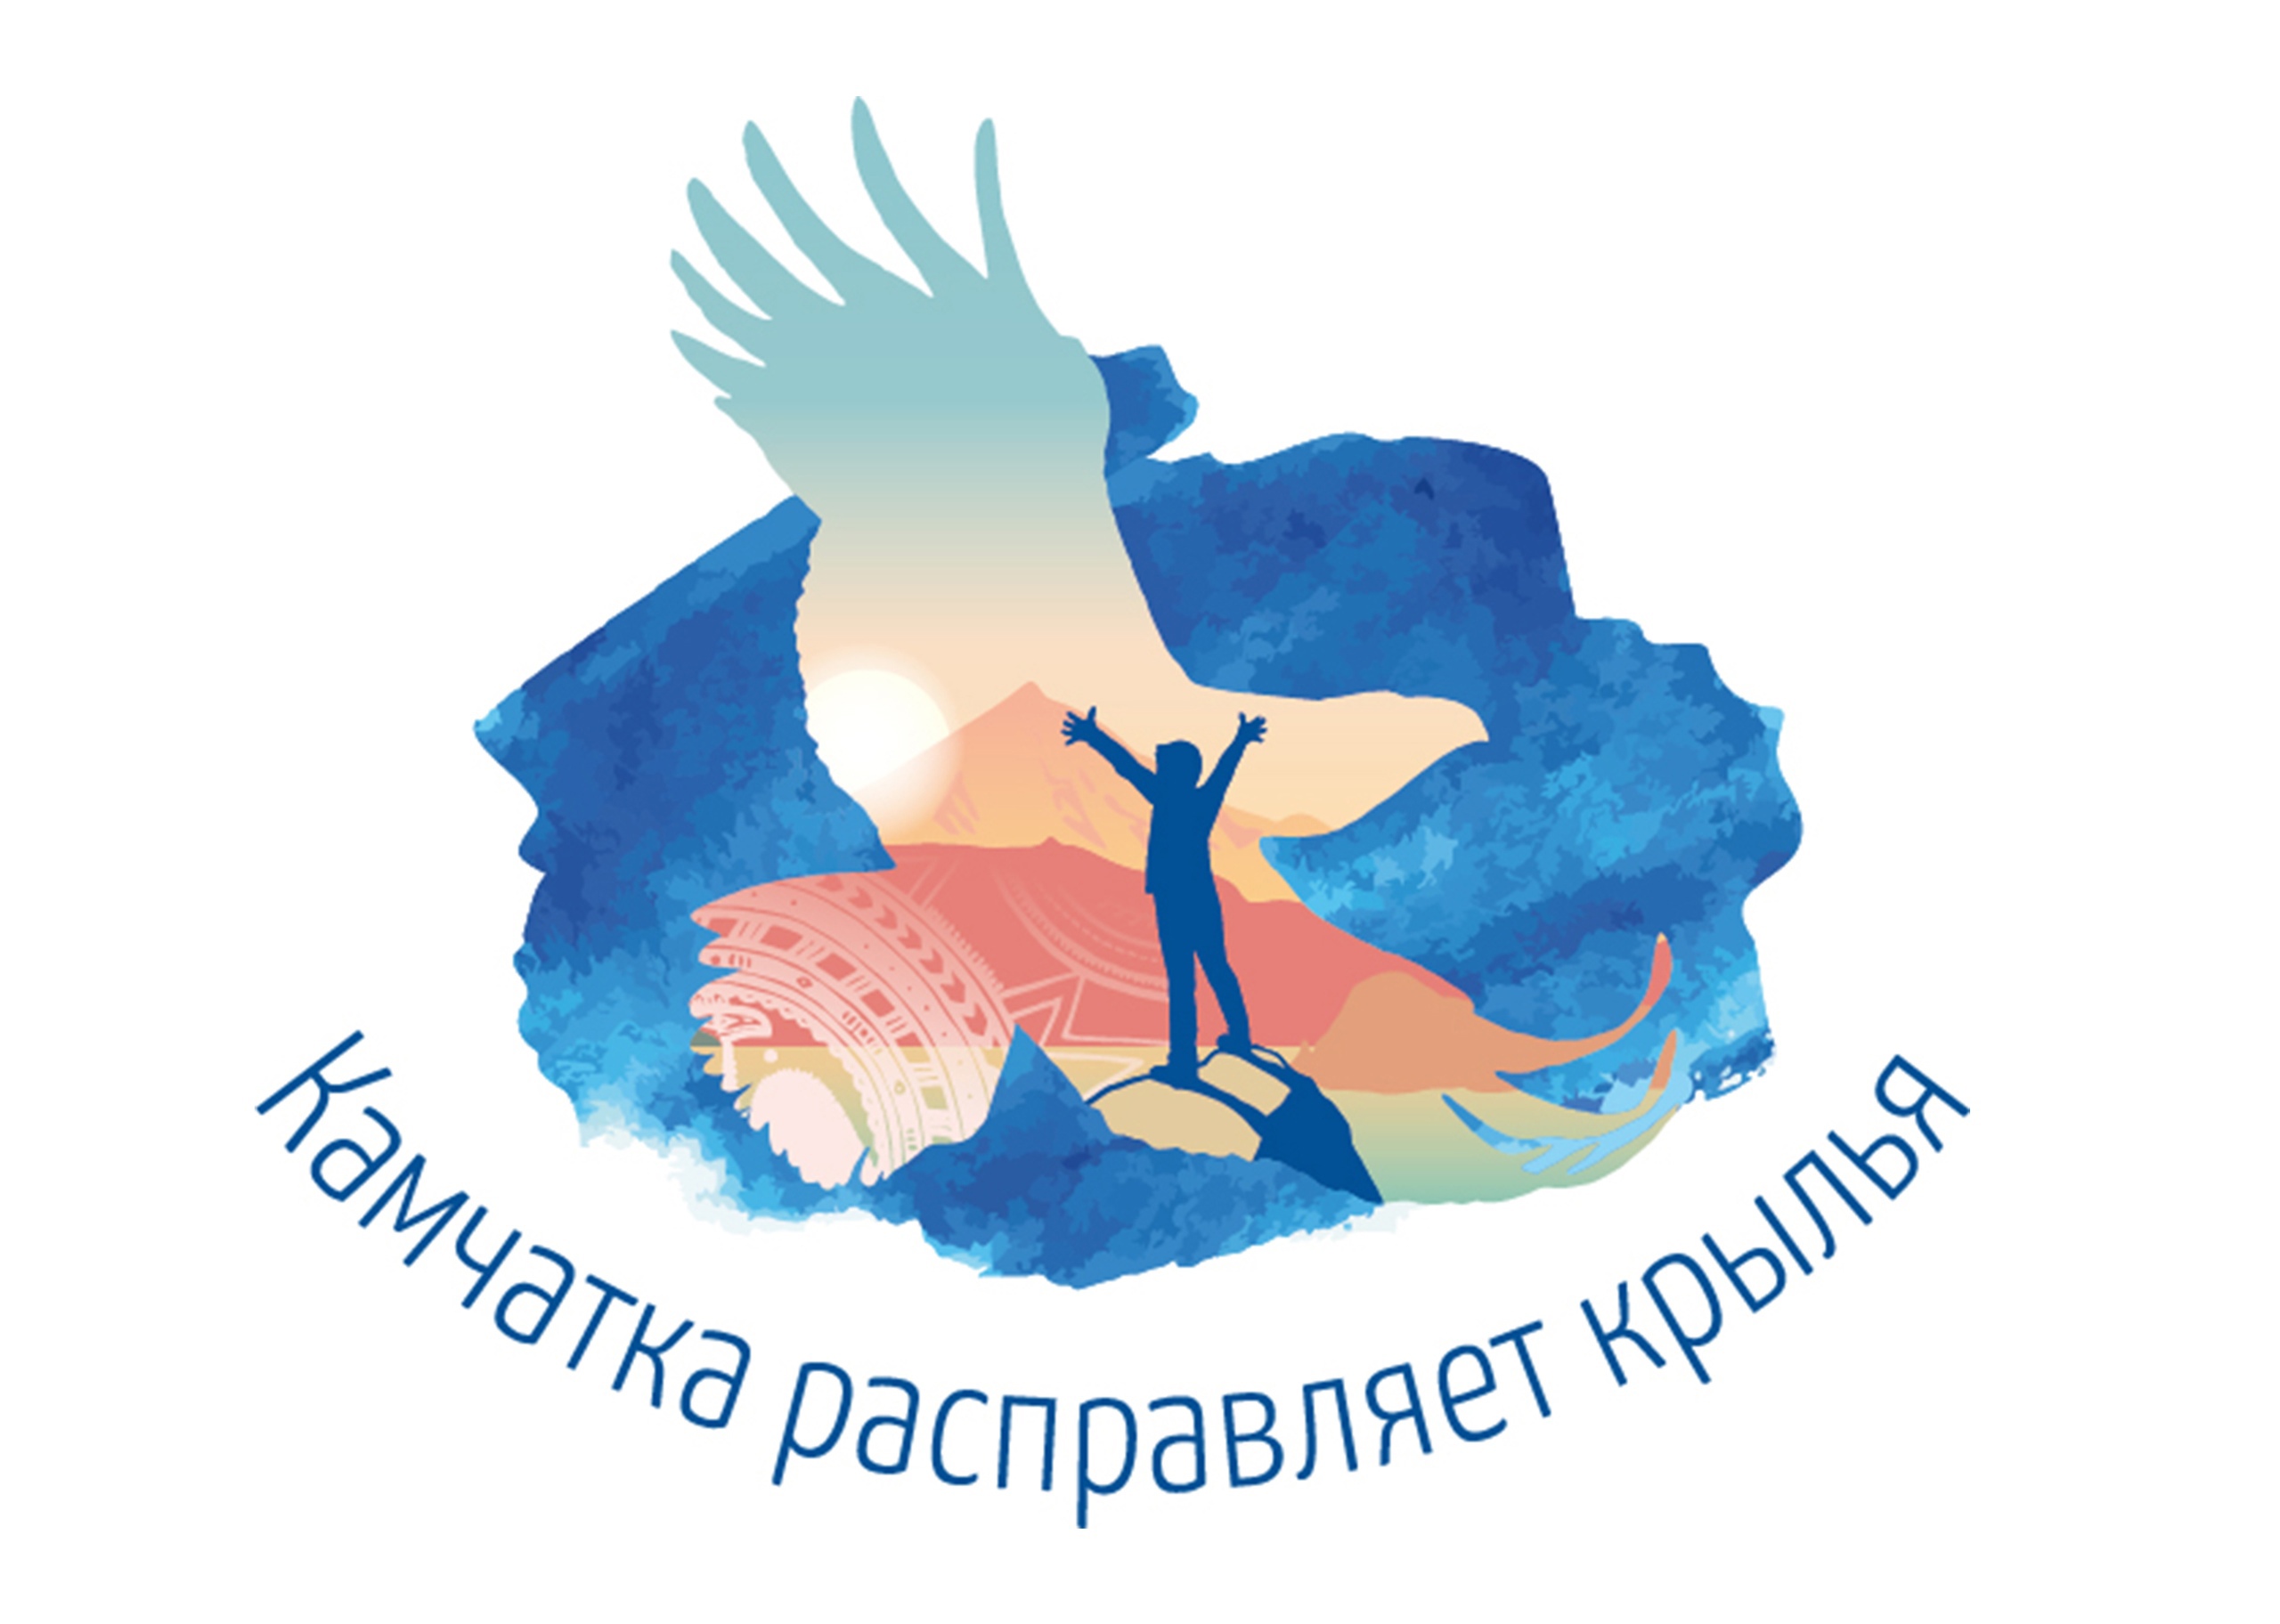 Мы рады объявить об официальном старте самого крупного орнитологического проекта на территории Камчатского края – «Камчатка расправляет крылья»!